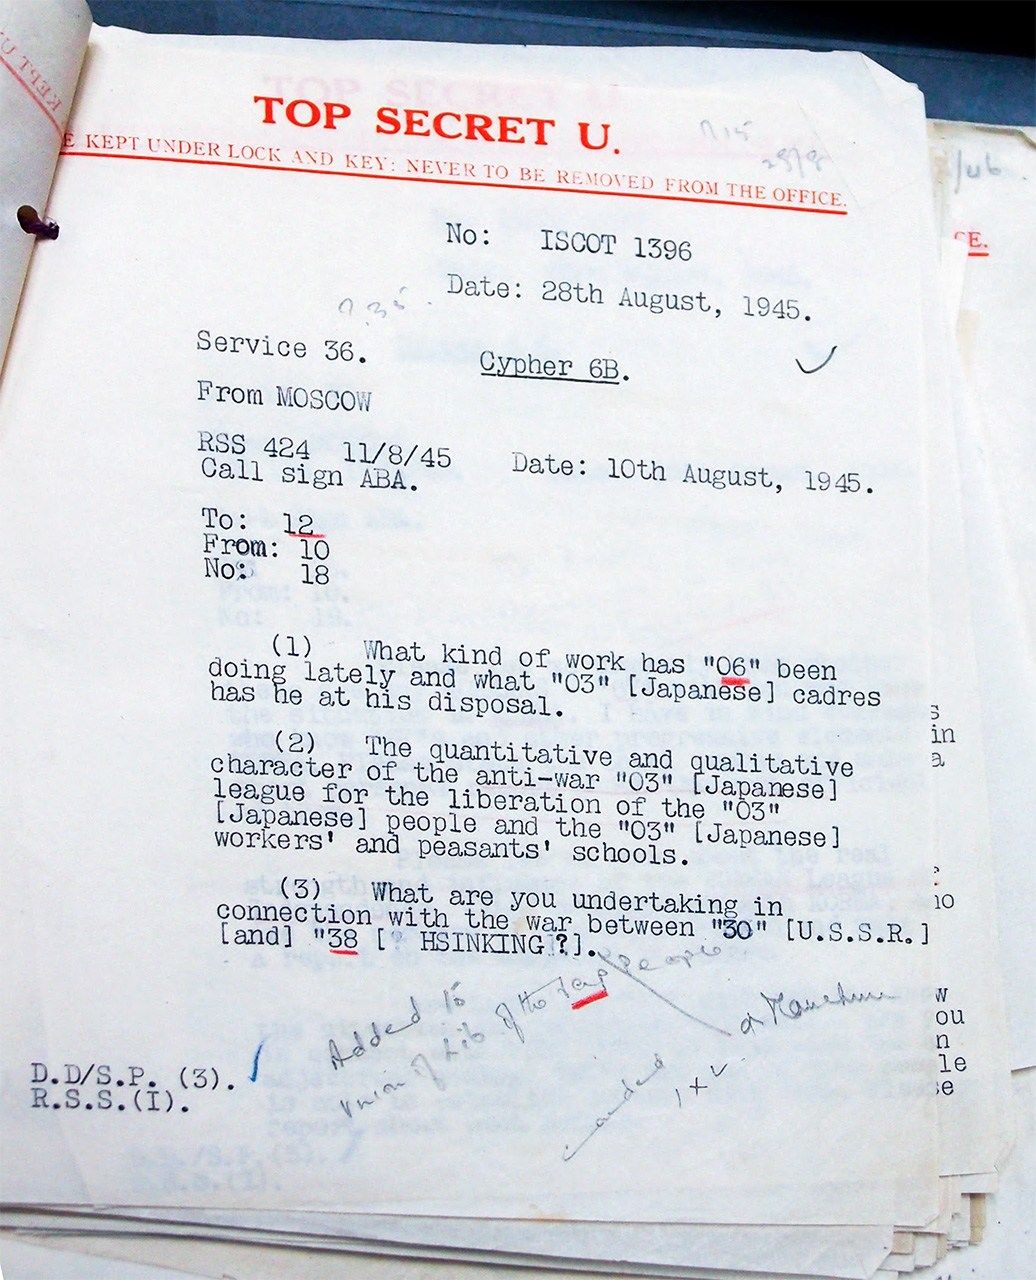 برقية مشفرة معترضة أرسلتها موسكو إلى الحزب الشيوعي الصيني في 10 أغسطس/آب عام 1945 للاستفسار عن الوضع في يانان (HW / 17/42، الأرشيف الوطني البريطاني، كيو، لندن).